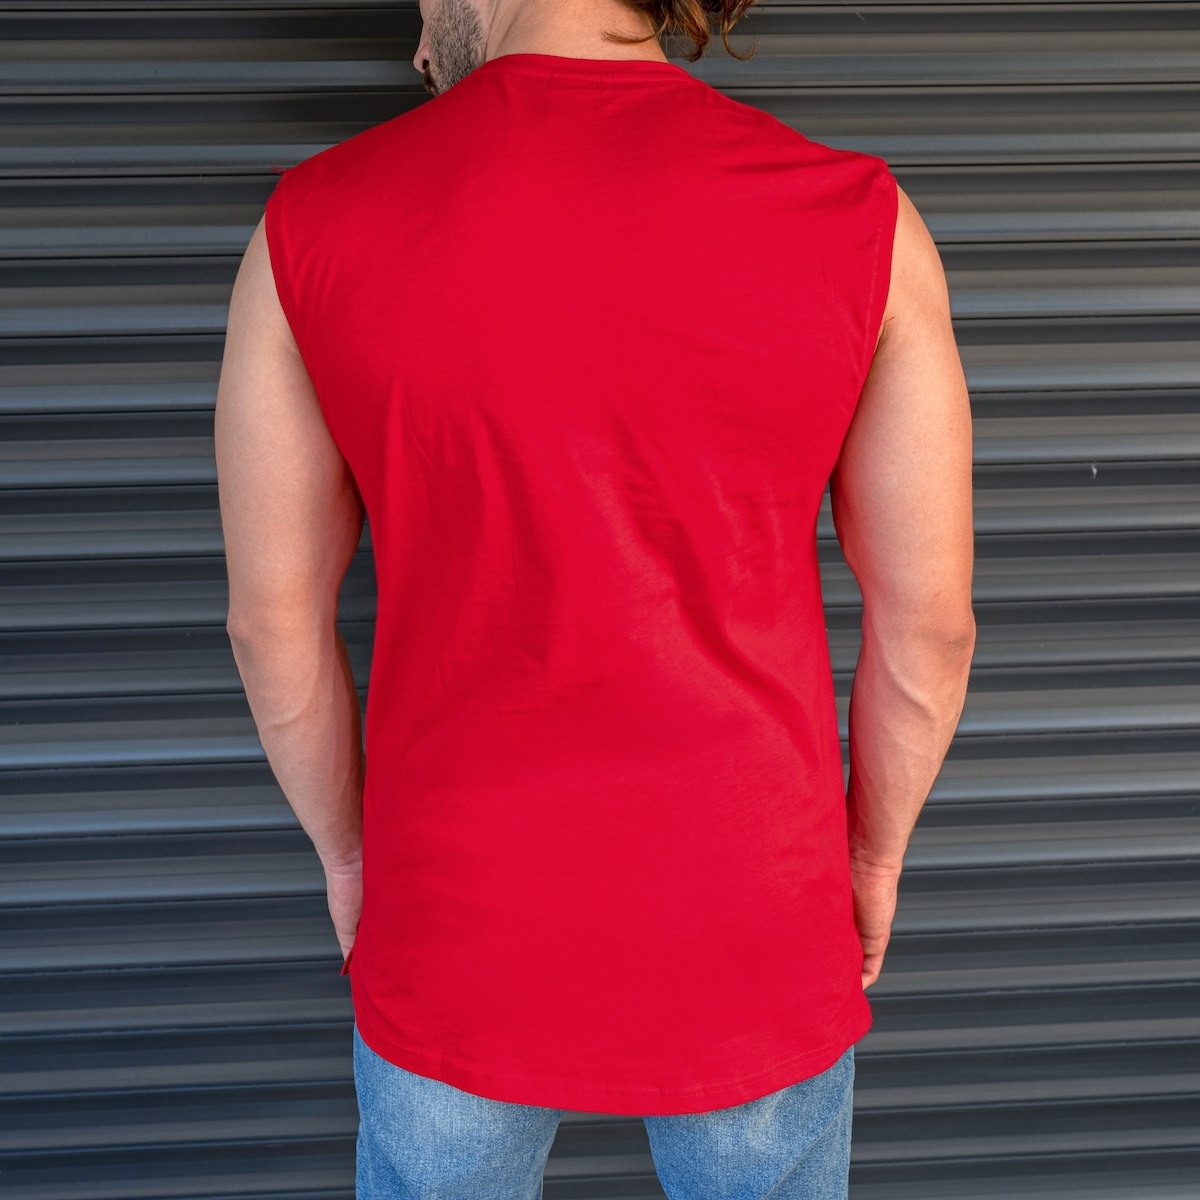 Men's Basic Sleeveless T-Shirt In Red